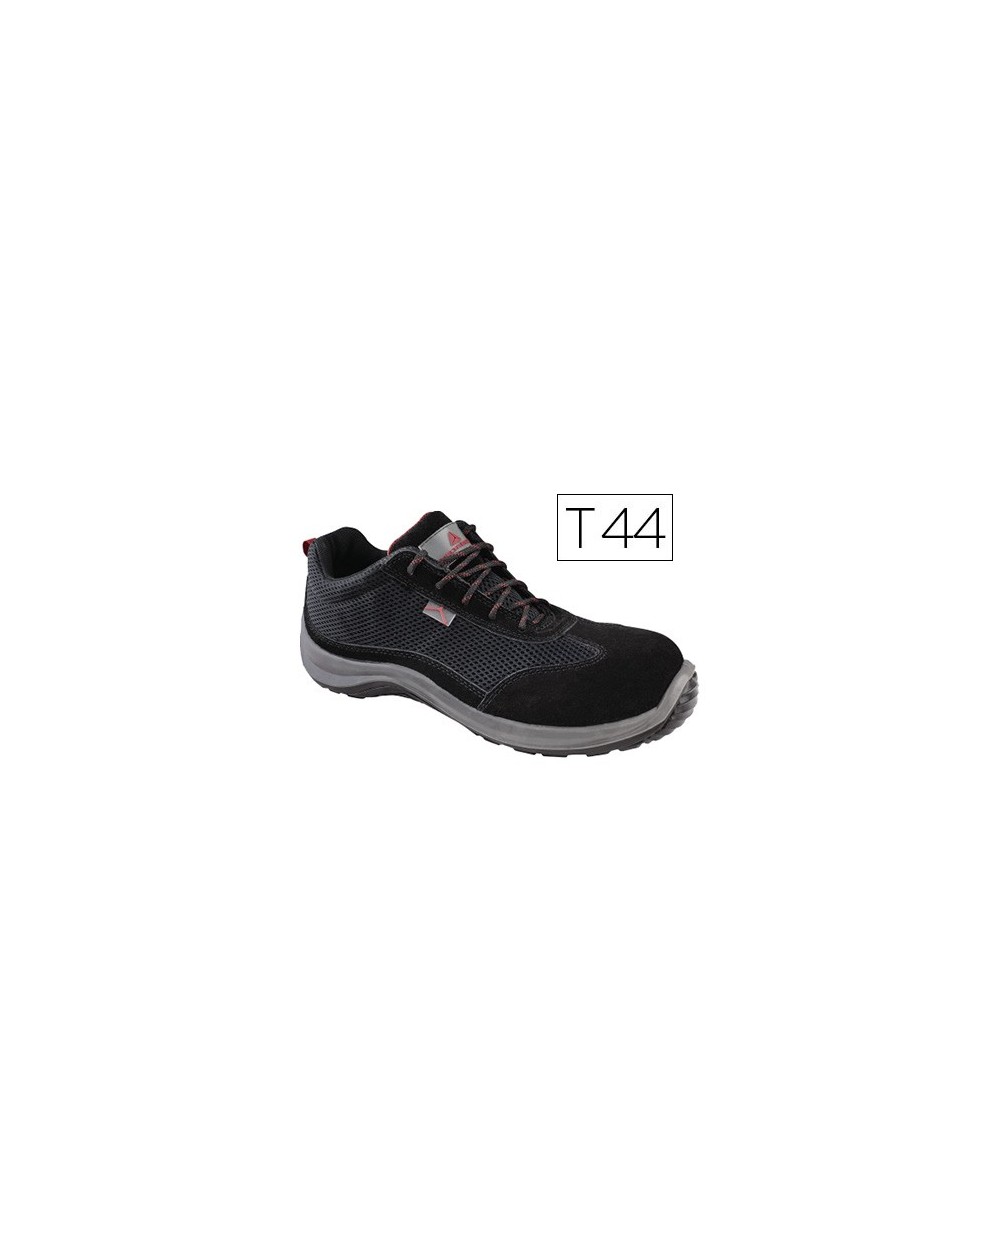 Zapatos de seguridad deltaplus asti piel de serraje afelpado suela de composite negro talla 44